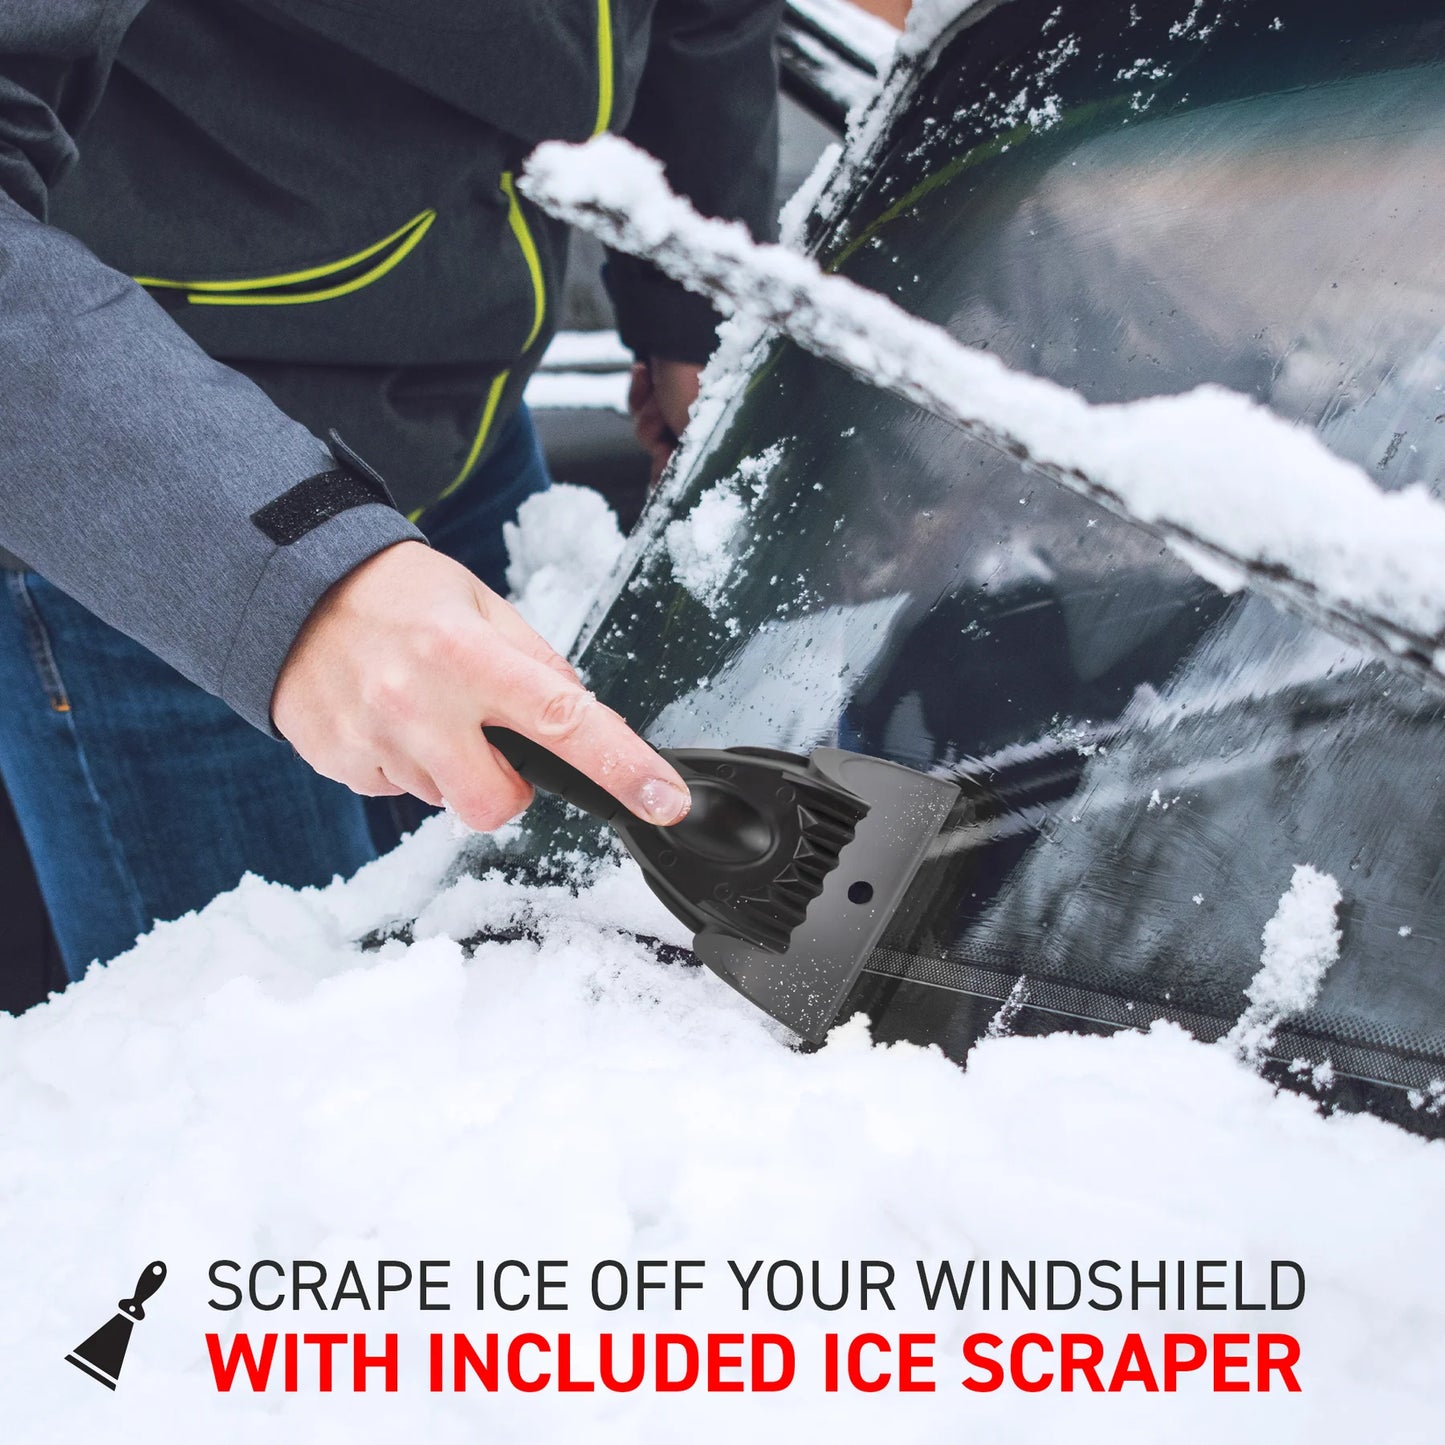 Aluminium snow shovel (110cm long) and snow scraper kit